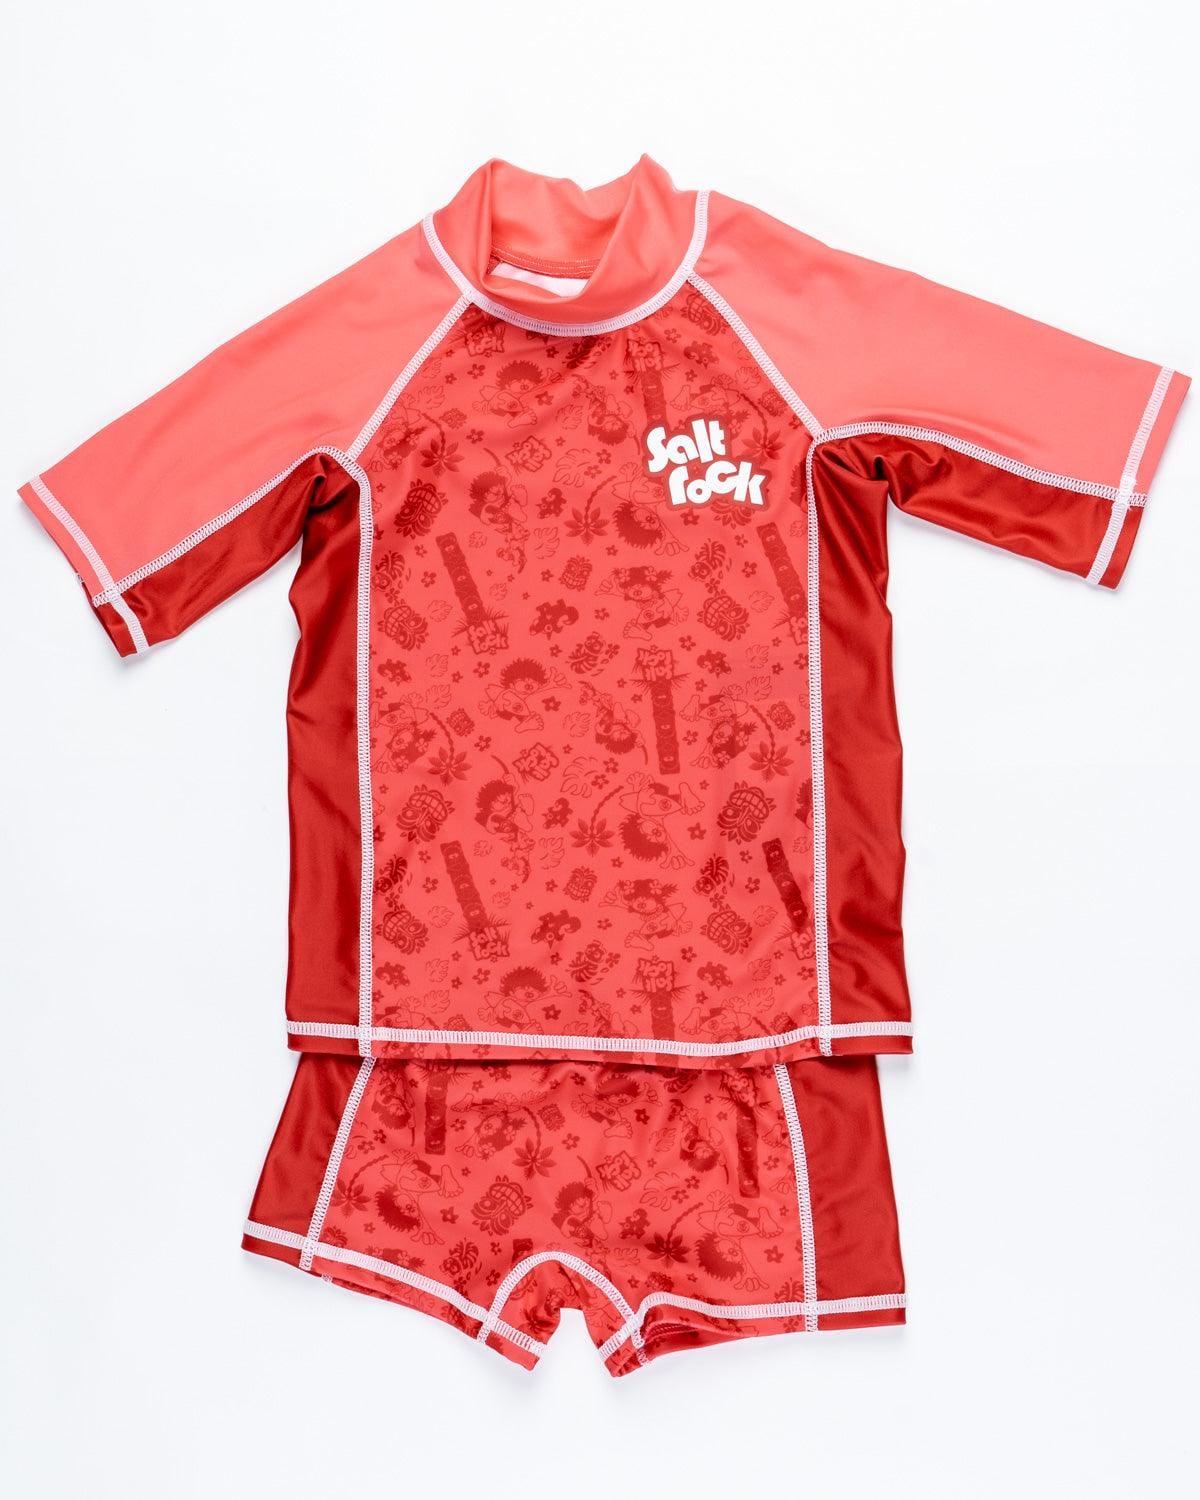 Tiki Tok - Kids Swim Set - Red, Red / 3-4 Years